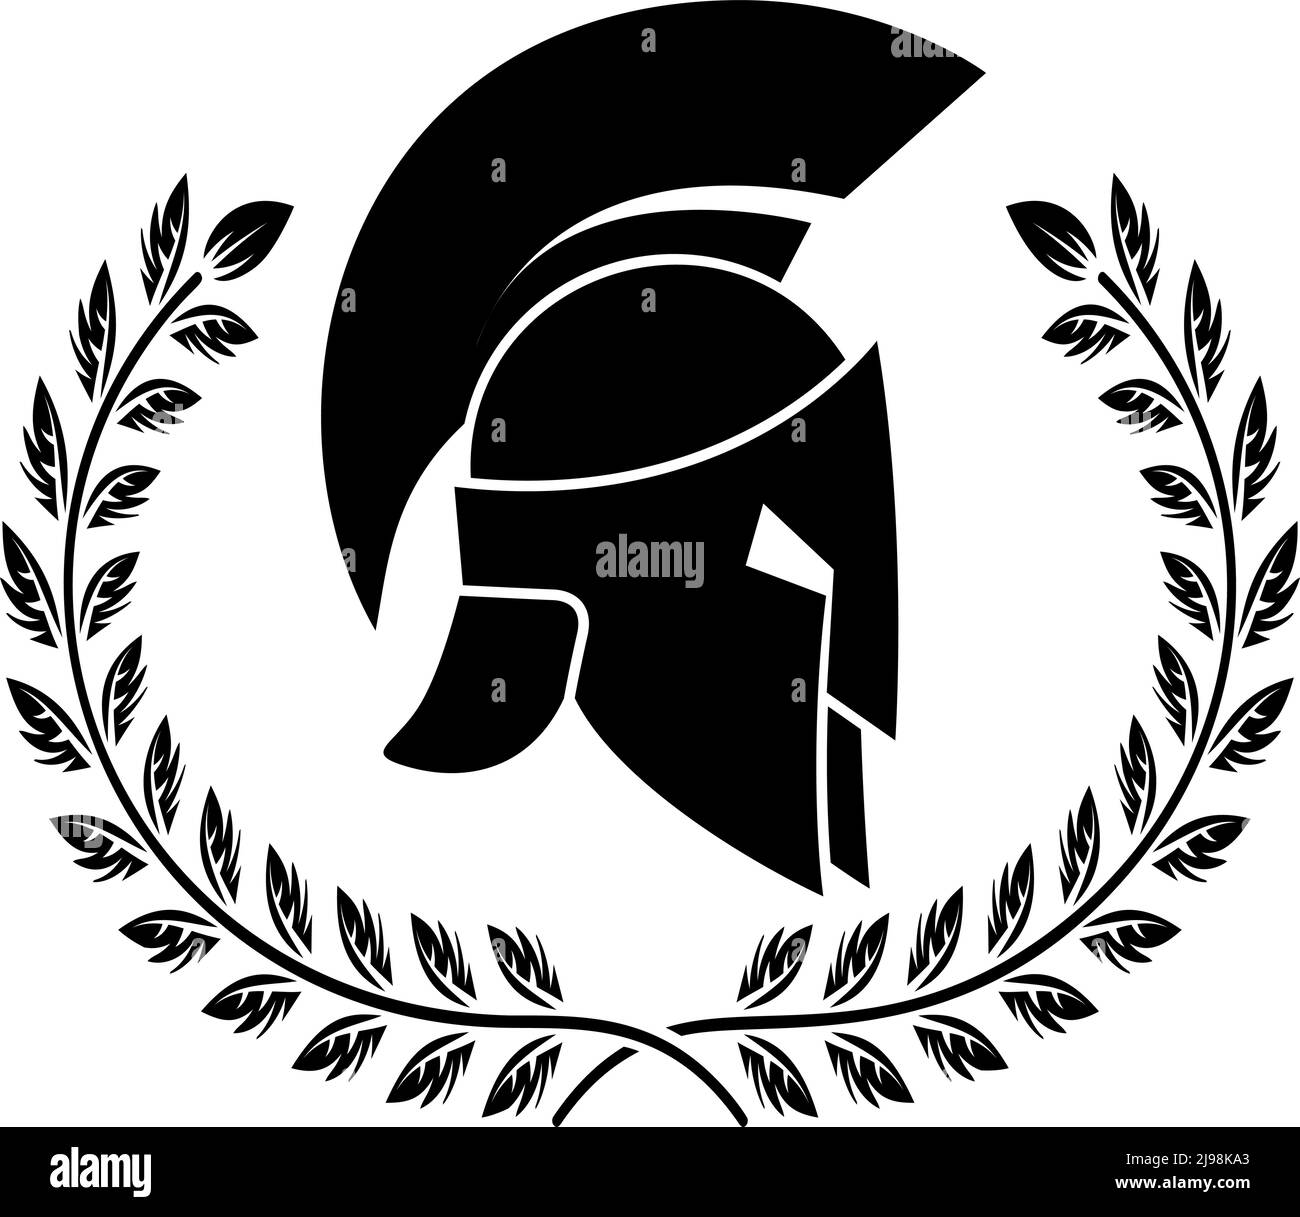 Spartanischer Helm mit Lorbeerkranz. Gestaltungselement für Logo, Emblem, Schild, Poster, T-Shirt. Vektorgrafik Stock Vektor